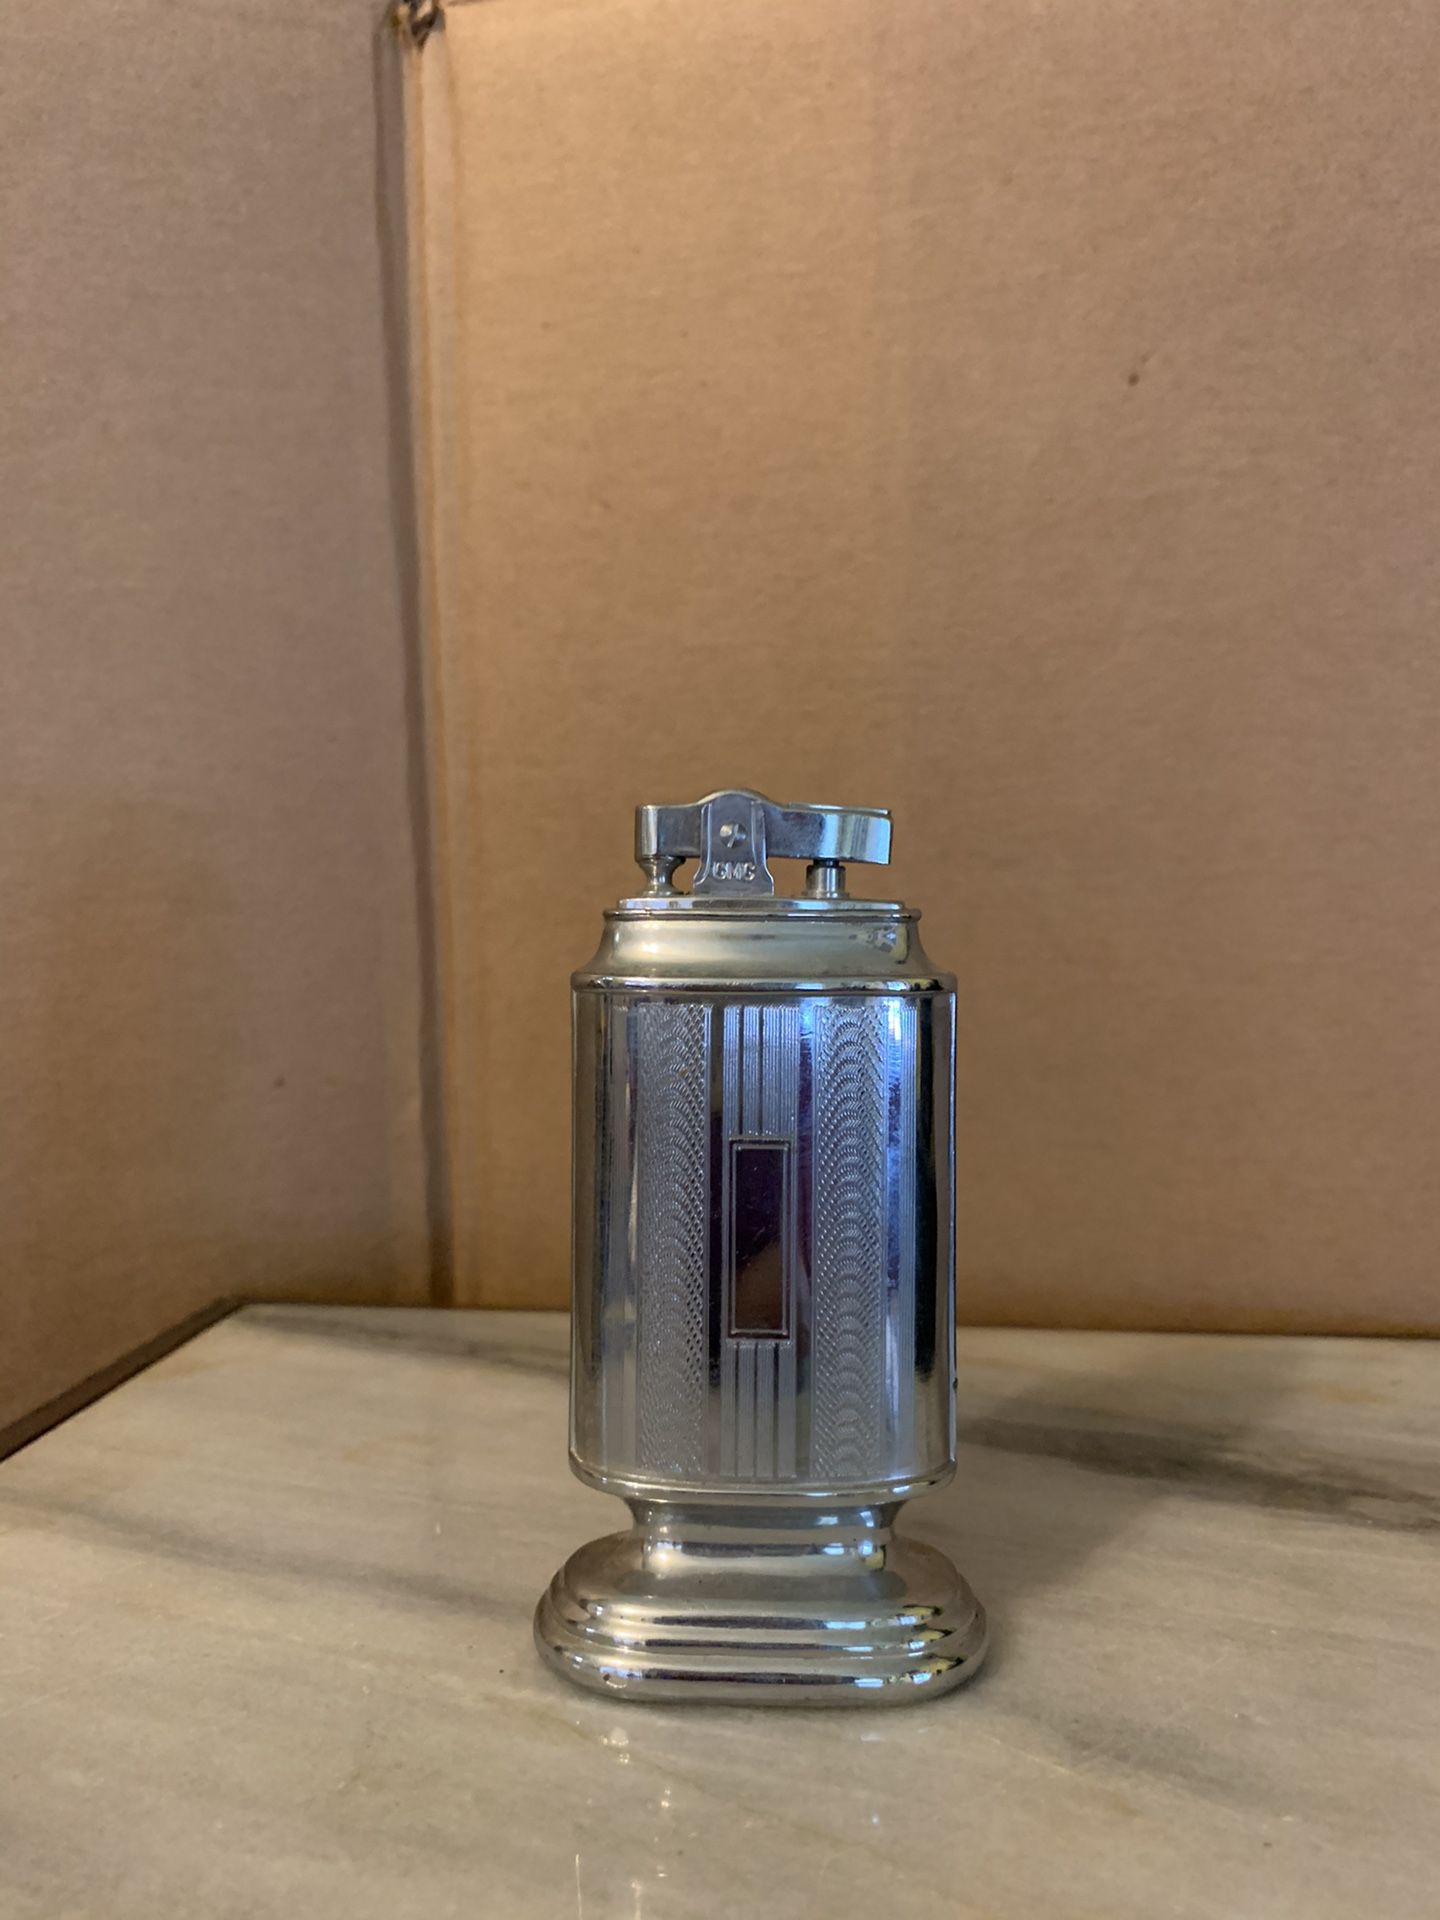 Vintage table lighter